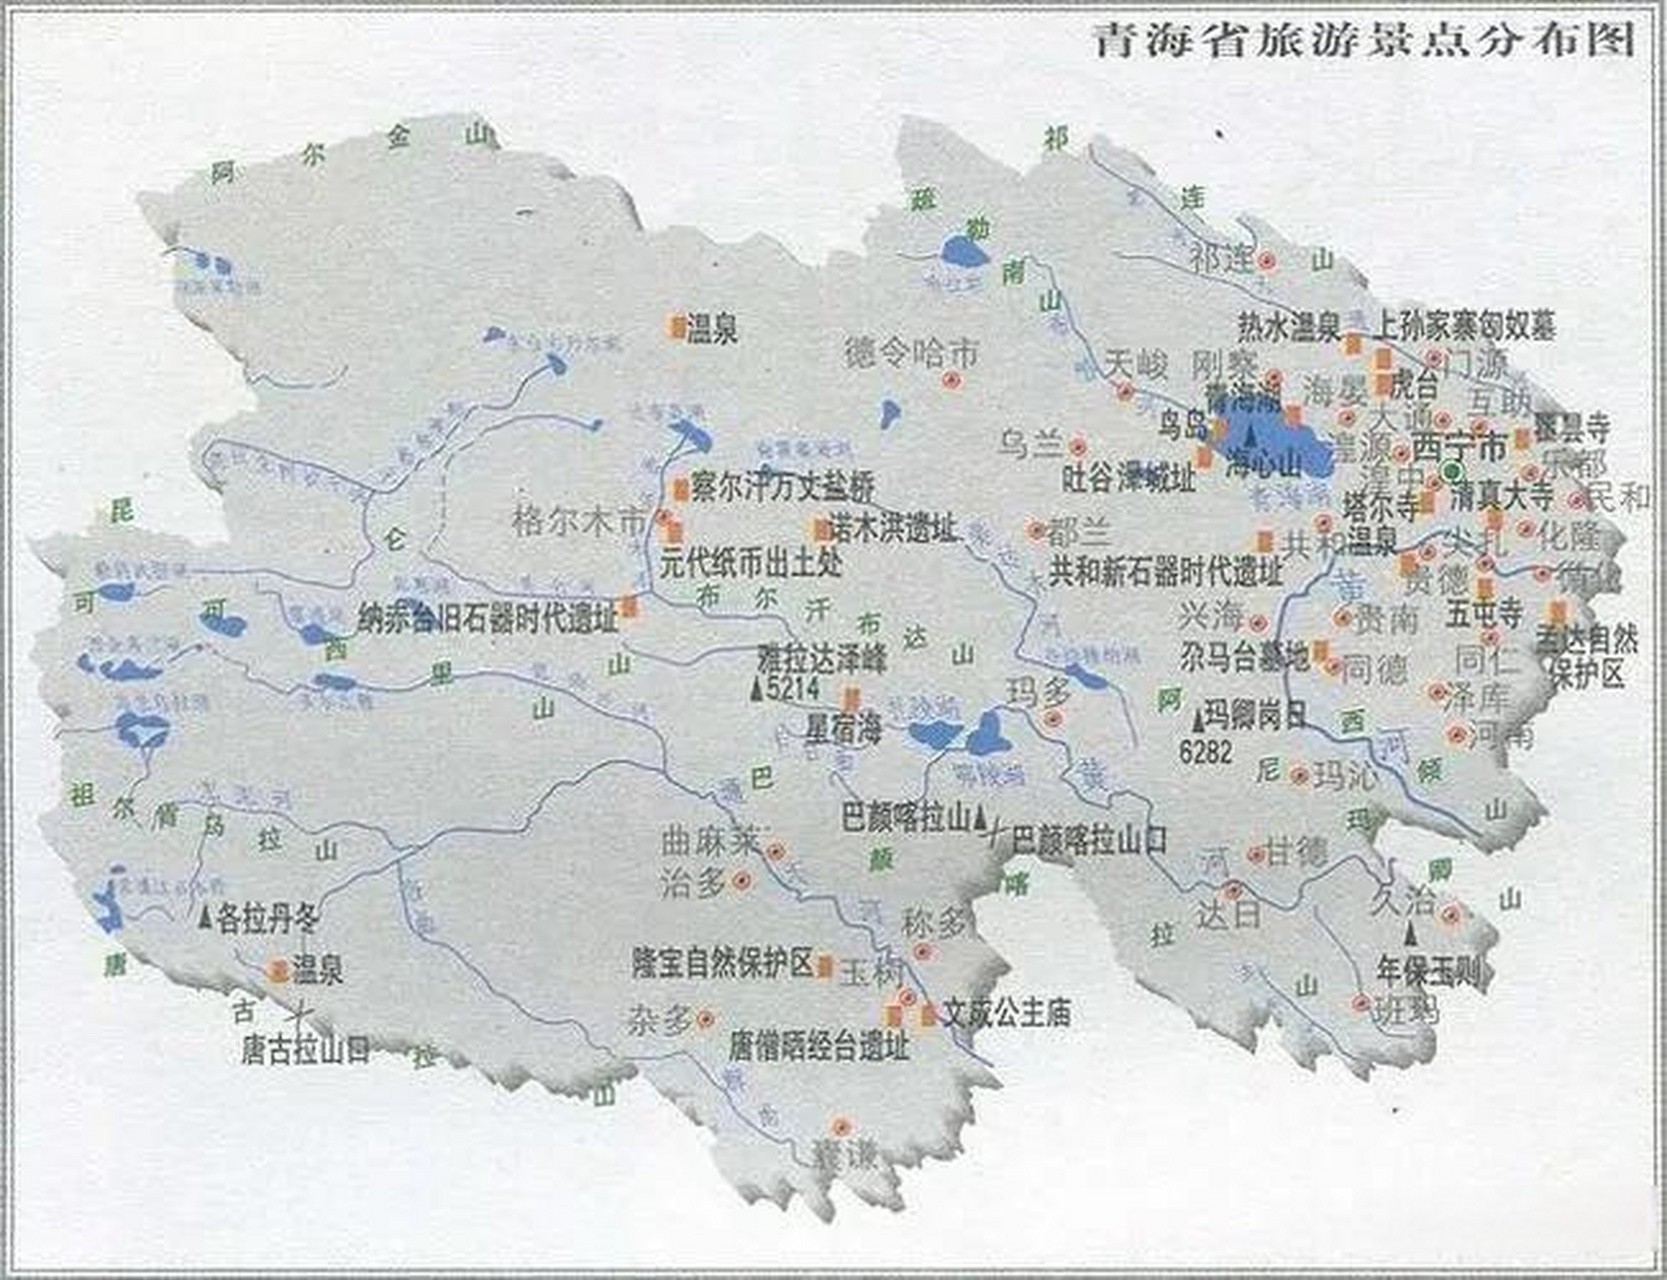 青海省地图真的很像一只小白兔呀,青海湖就像小白兔眼睛.